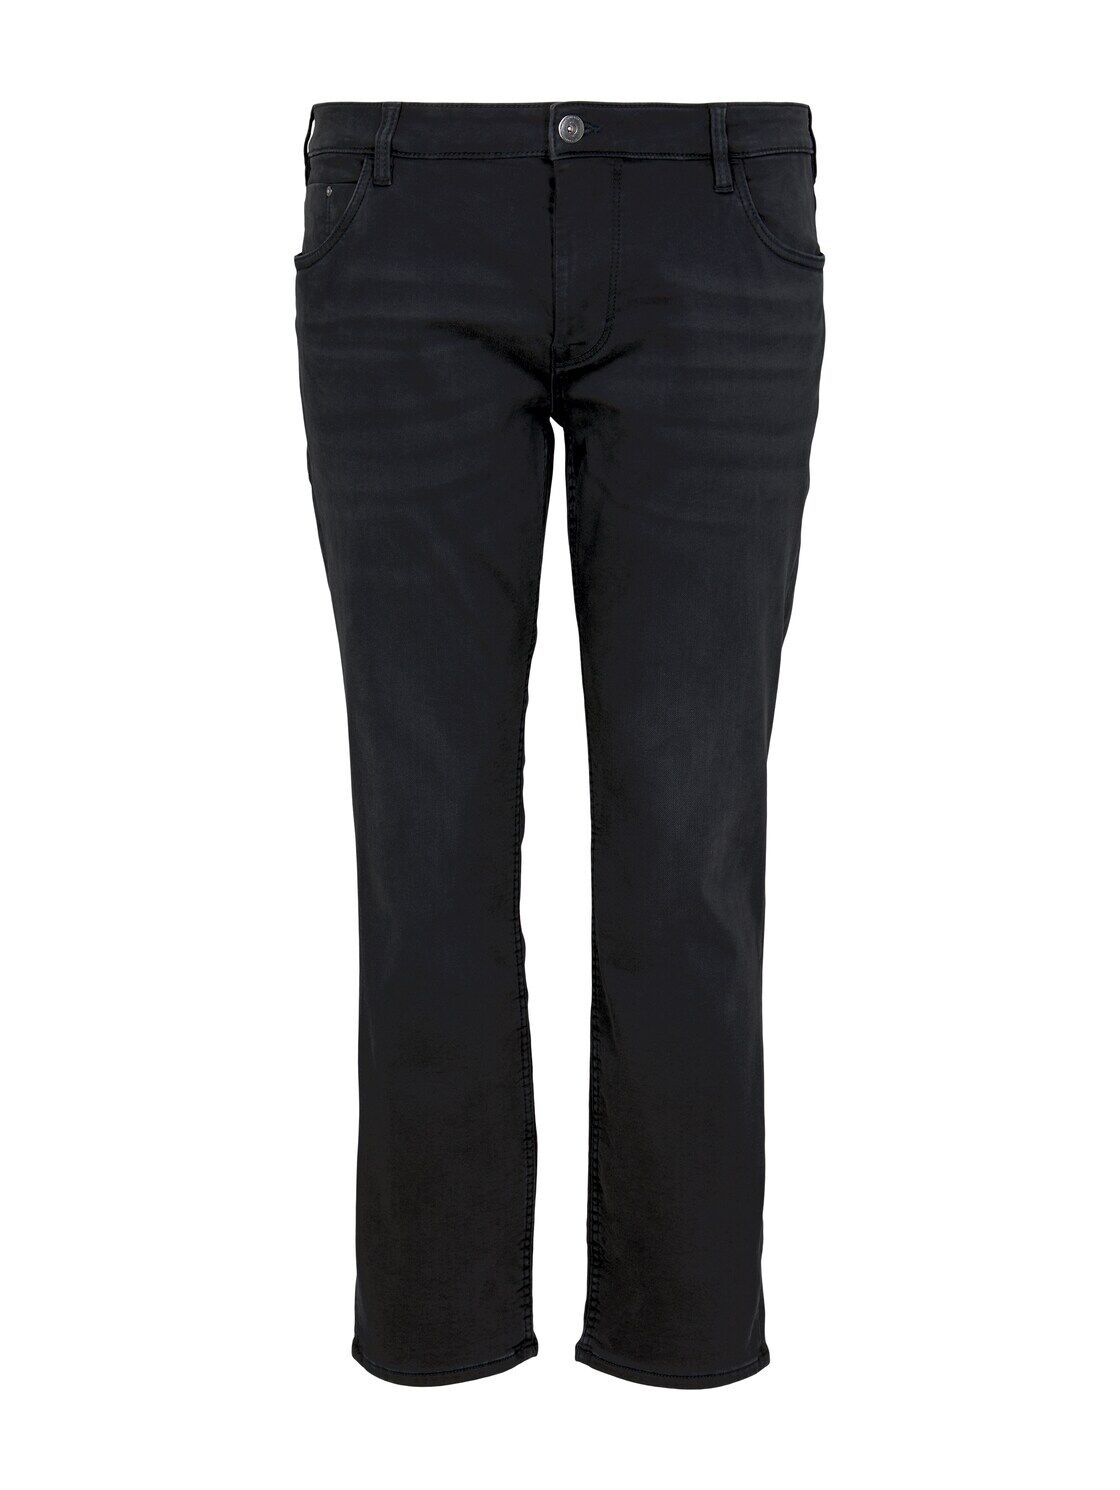 TOM TAILOR Herren Slim Fit Jeans mit leichter Waschung, schwarz, Gr.48/34